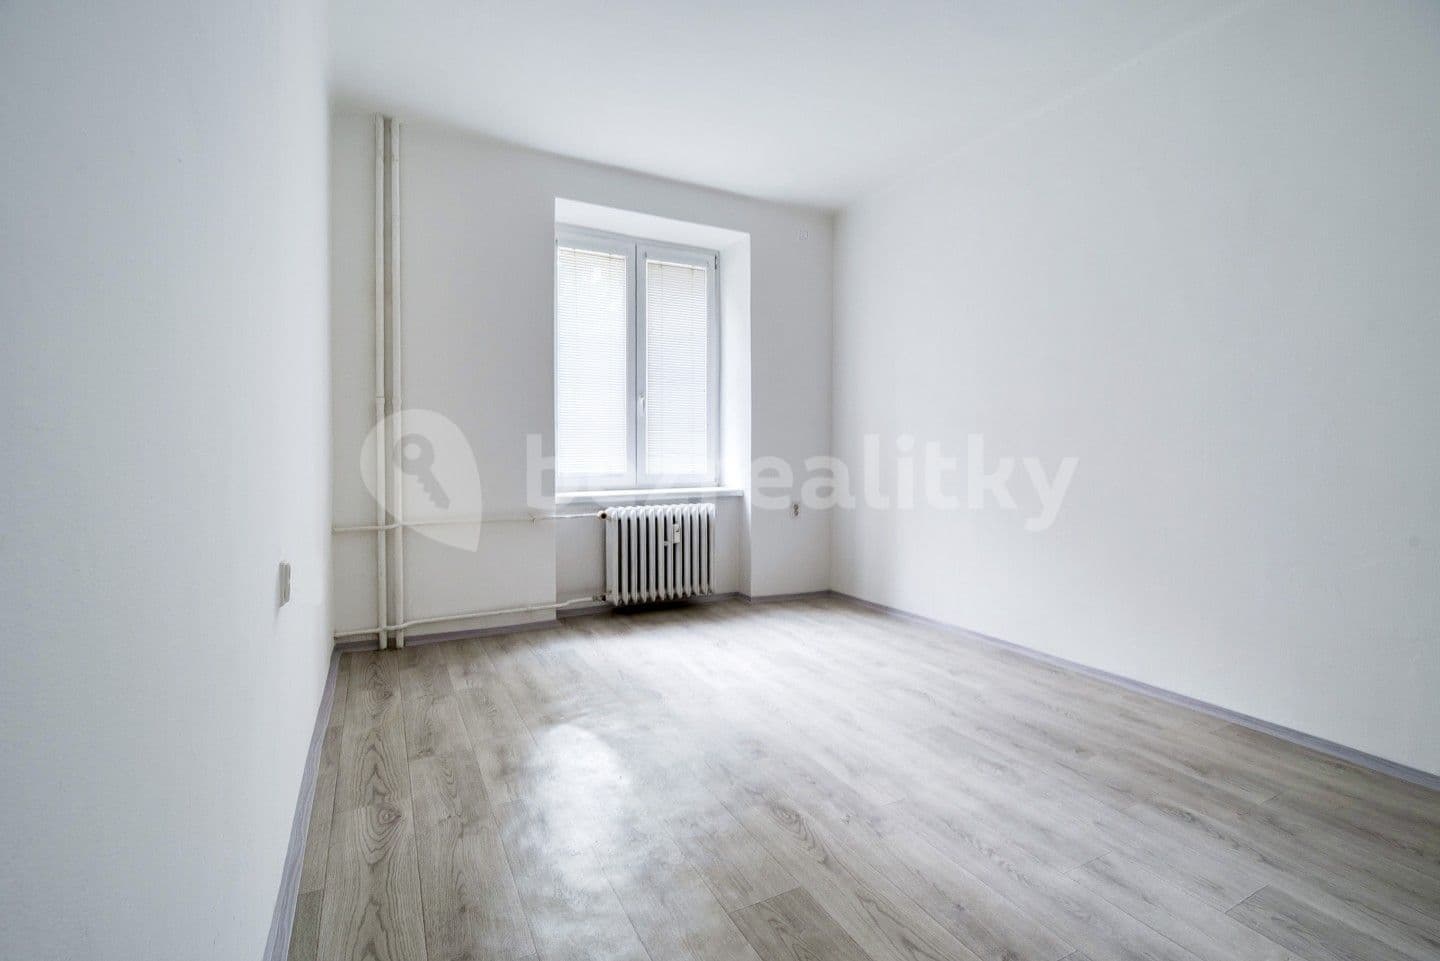 2 bedroom flat for sale, 53 m², tř. Budovatelů, Most, Ústecký Region